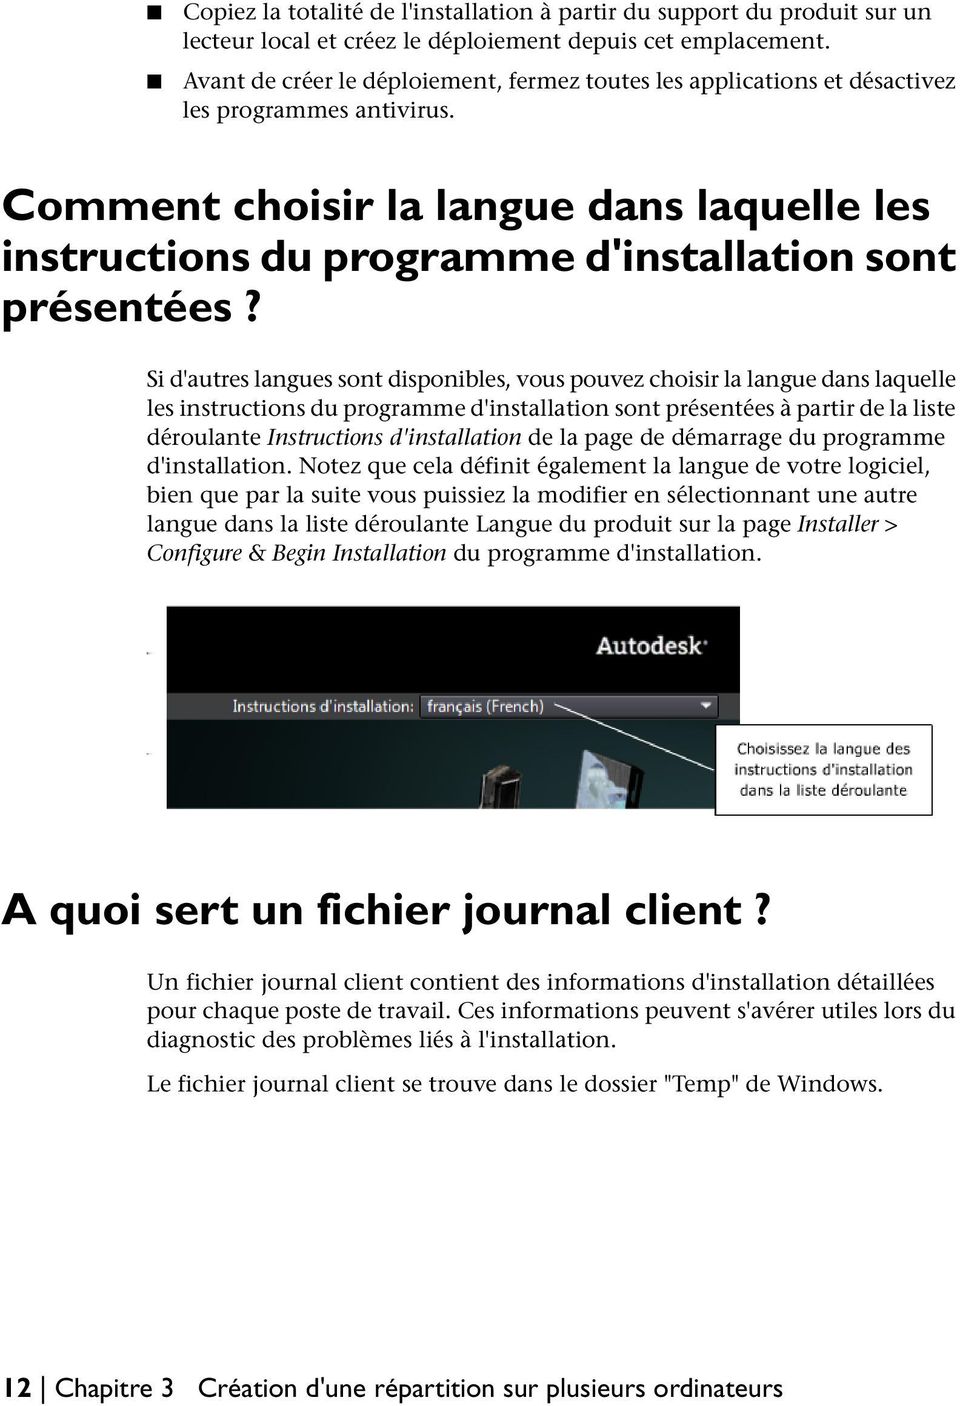 Comment choisir la langue dans laquelle les instructions du programme d'installation sont présentées?